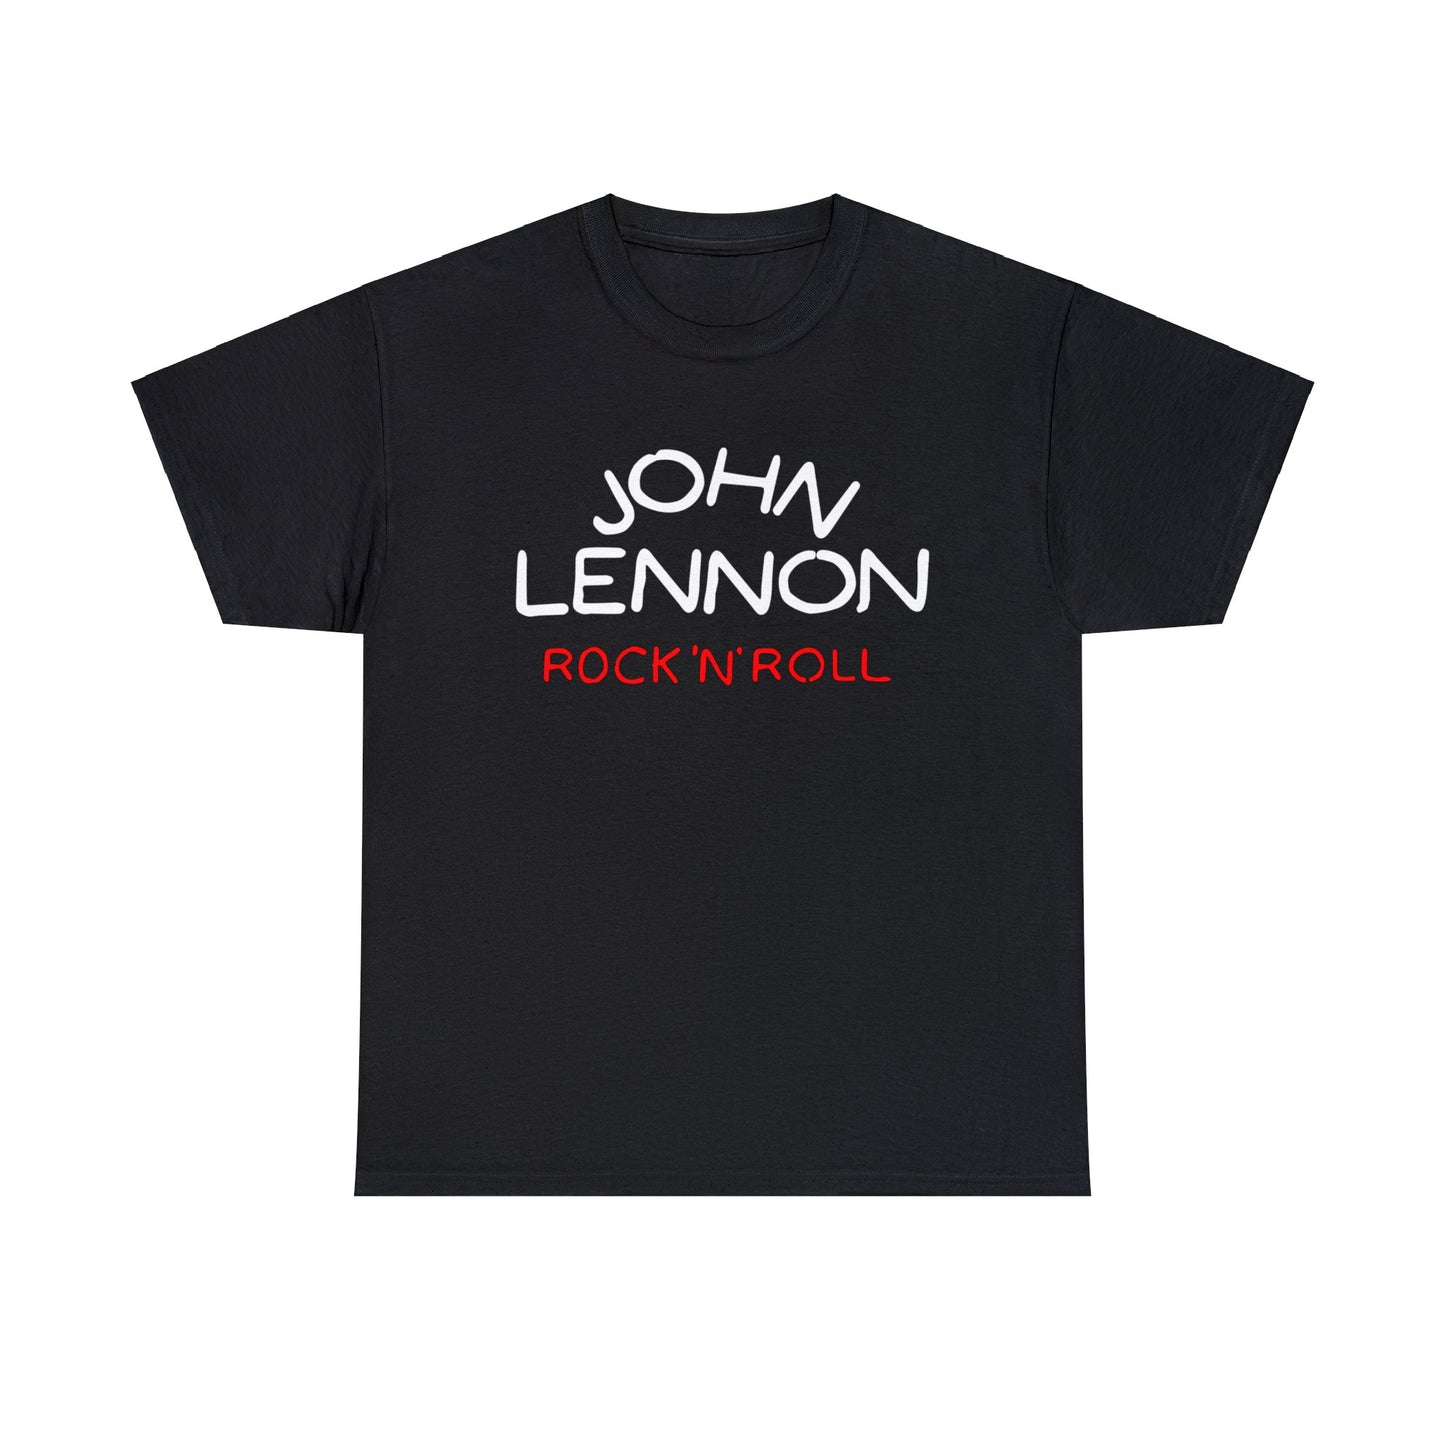 John Lennon Rock N Roll Album Promo 70s T-shirt for Sale